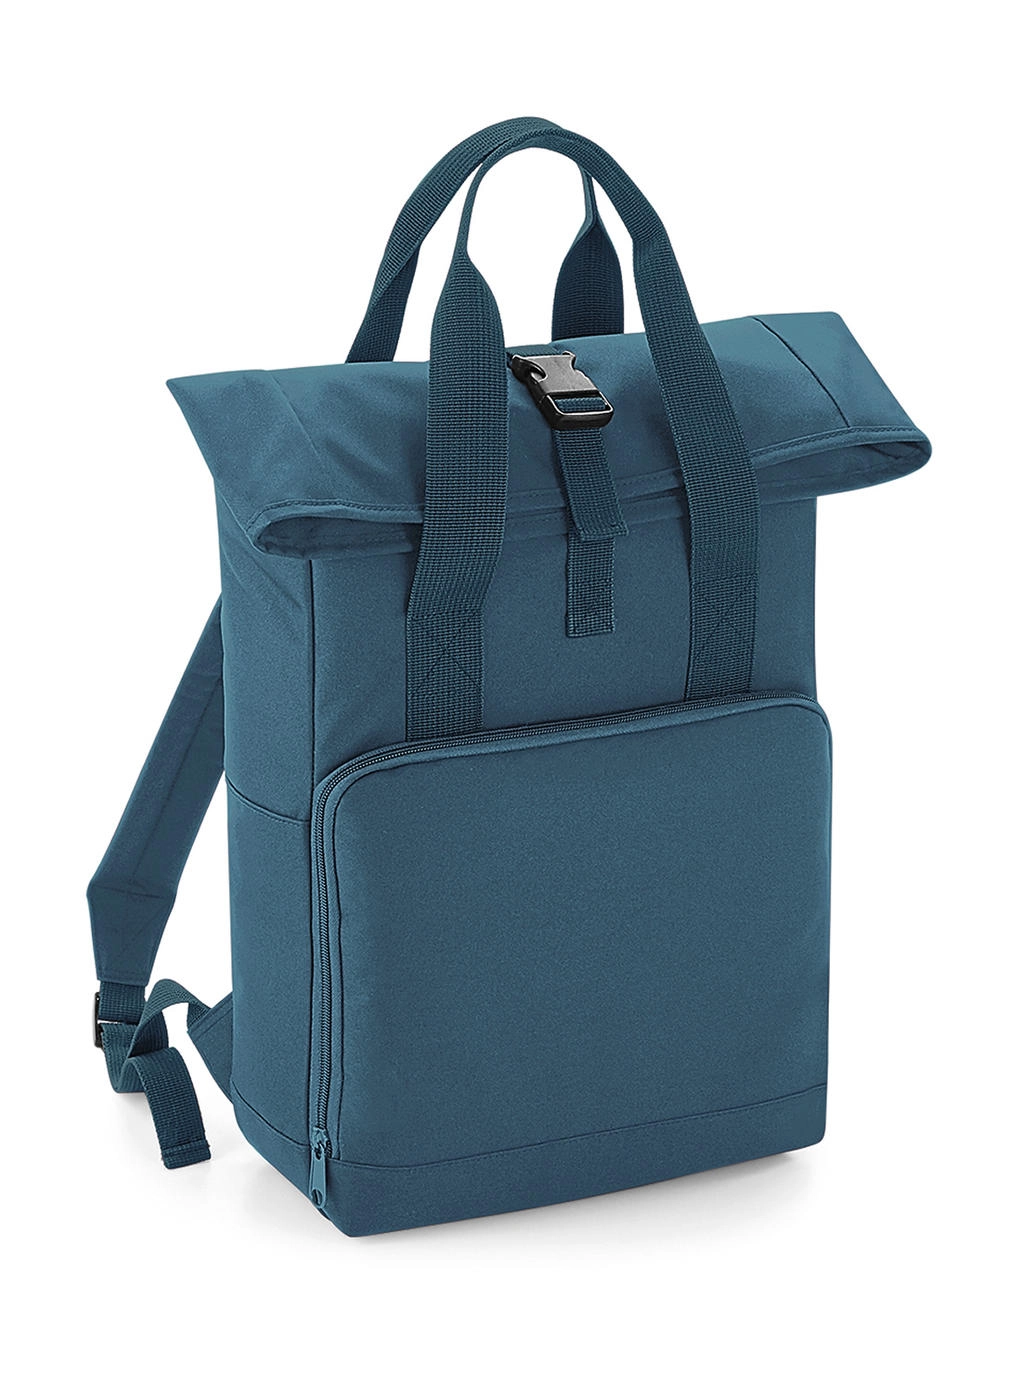 Twin Handle Roll-Top Backpack zum Besticken und Bedrucken in der Farbe Airforce Blue mit Ihren Logo, Schriftzug oder Motiv.